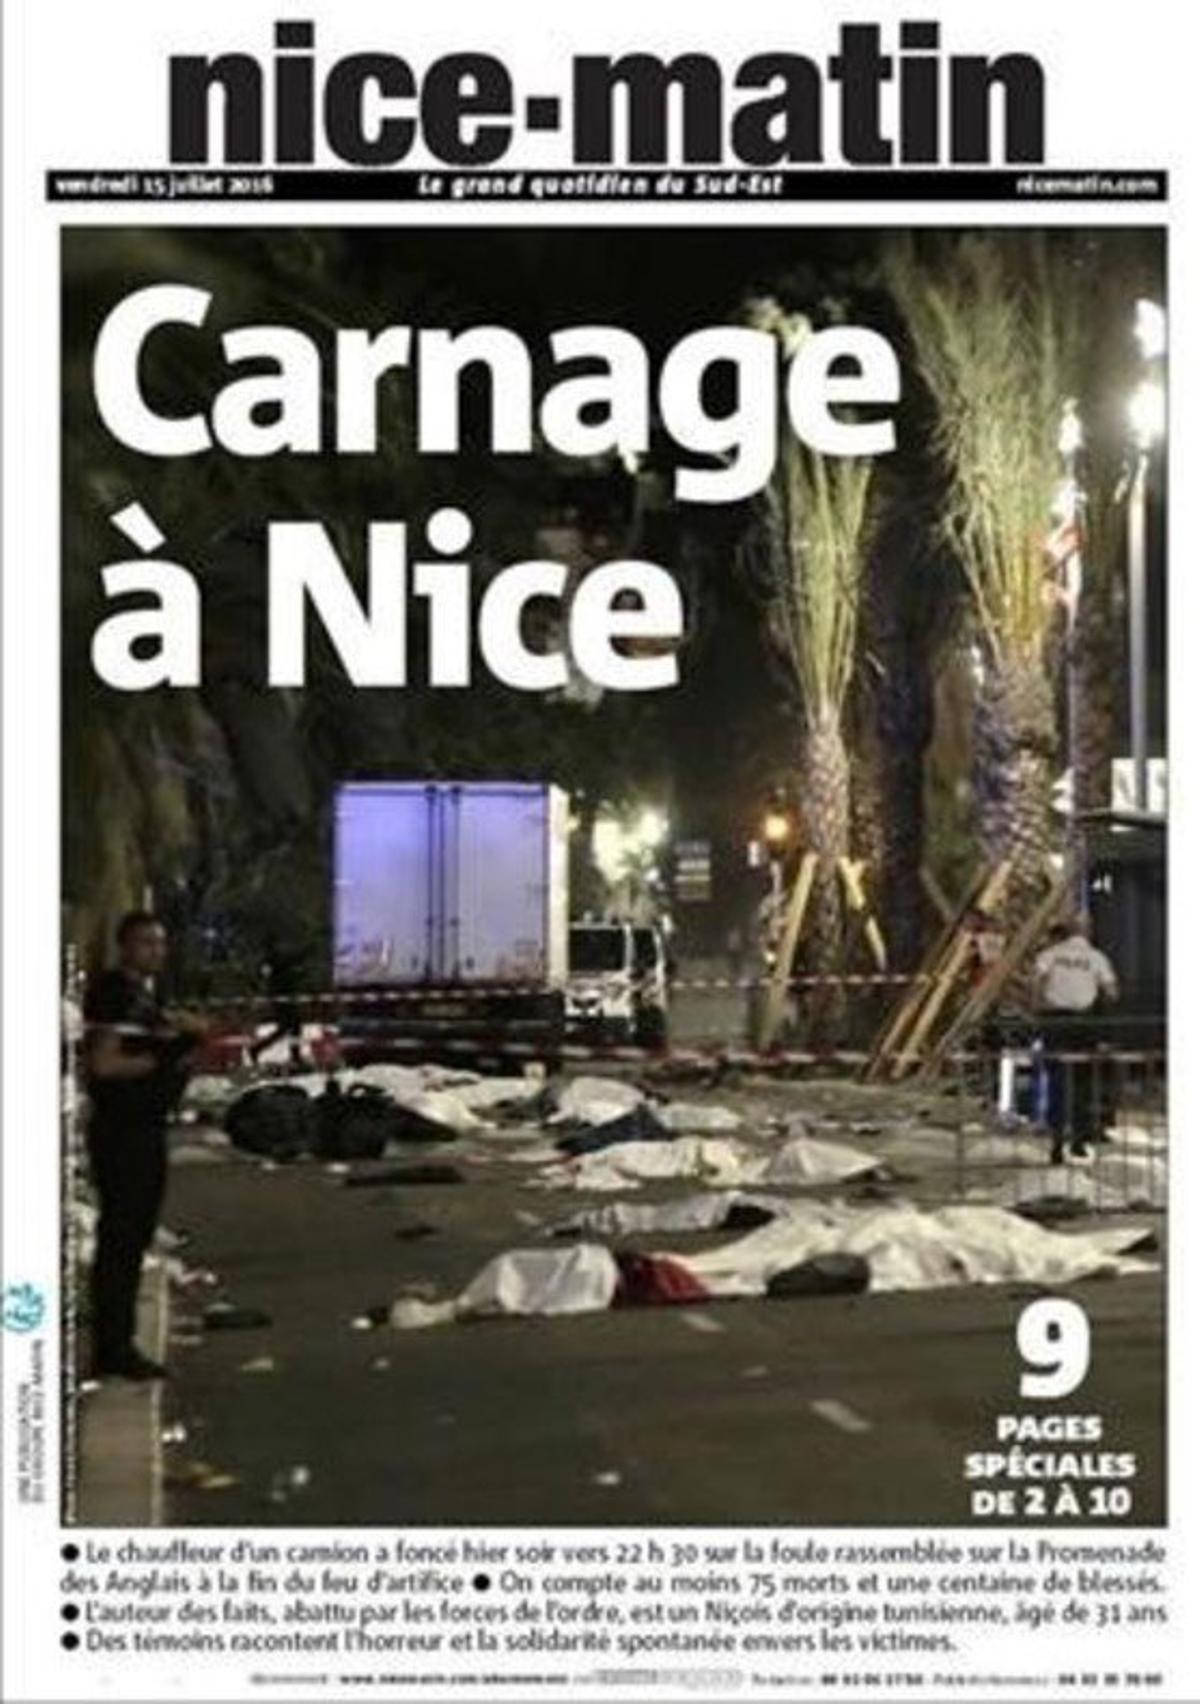 dcaminal34706192 15 6 2016 portadas de los diarios con el atentado de niza en160715101427